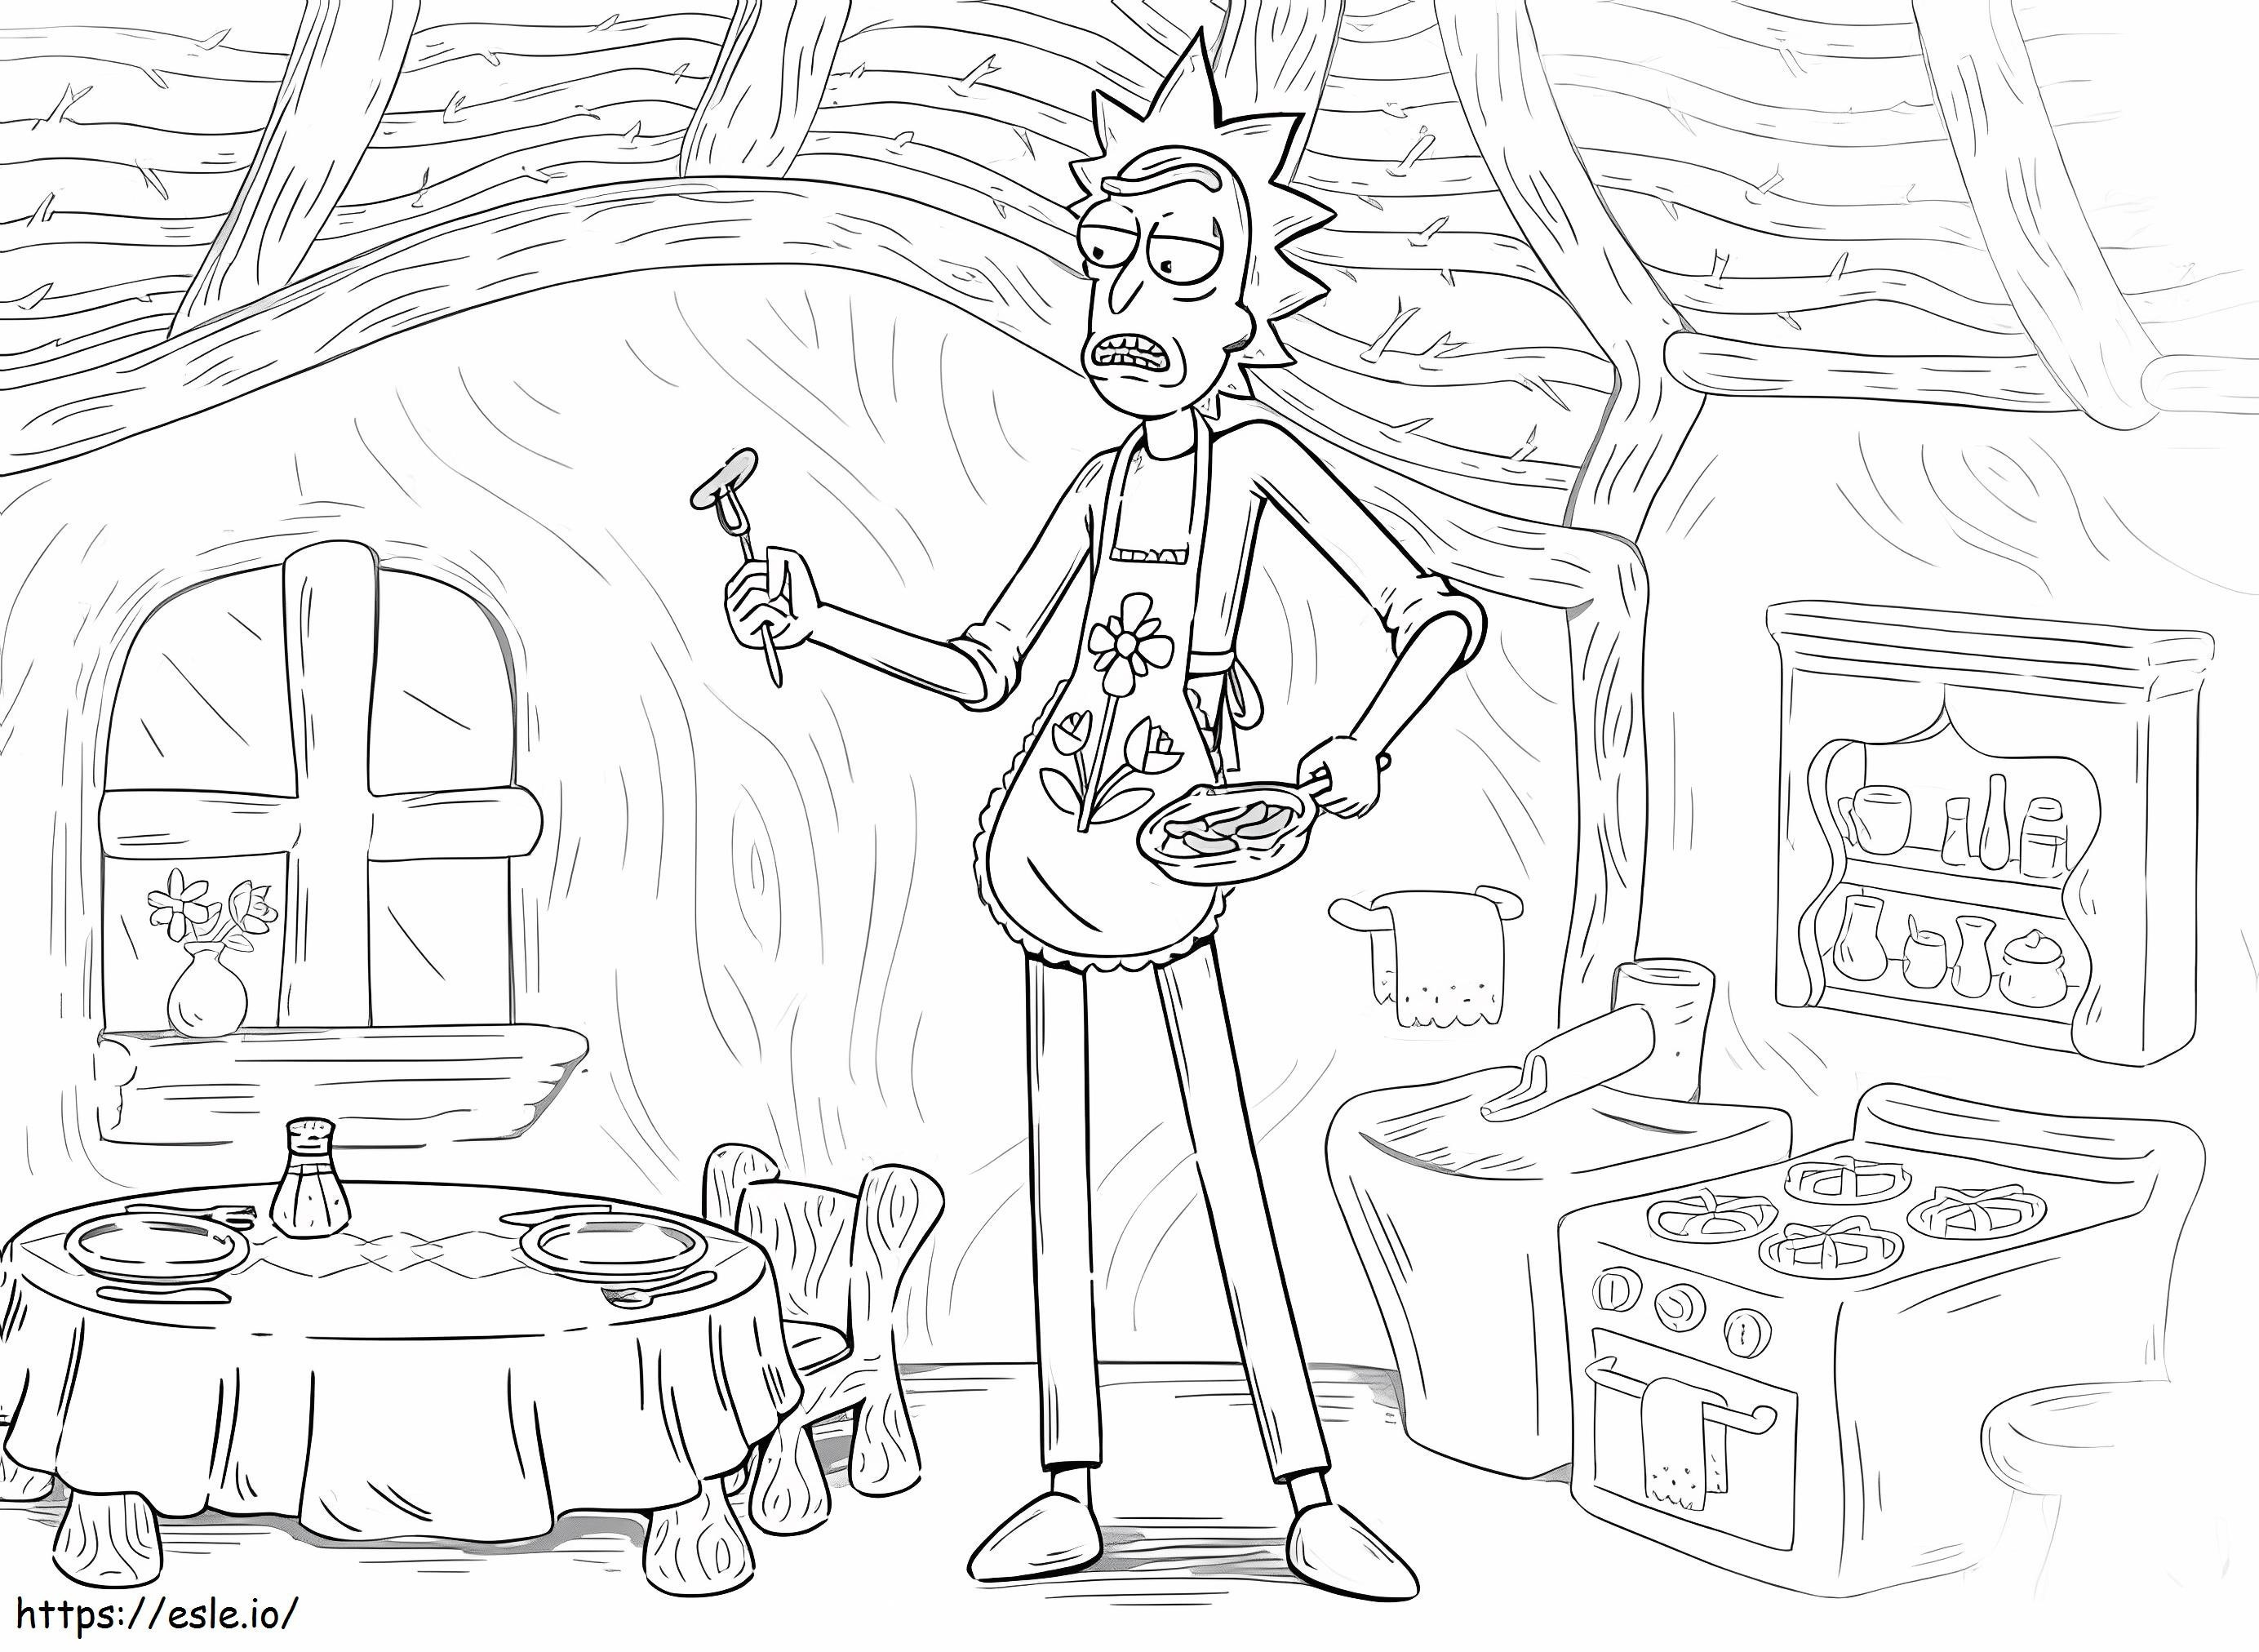 Rick in der Küche ausmalbilder